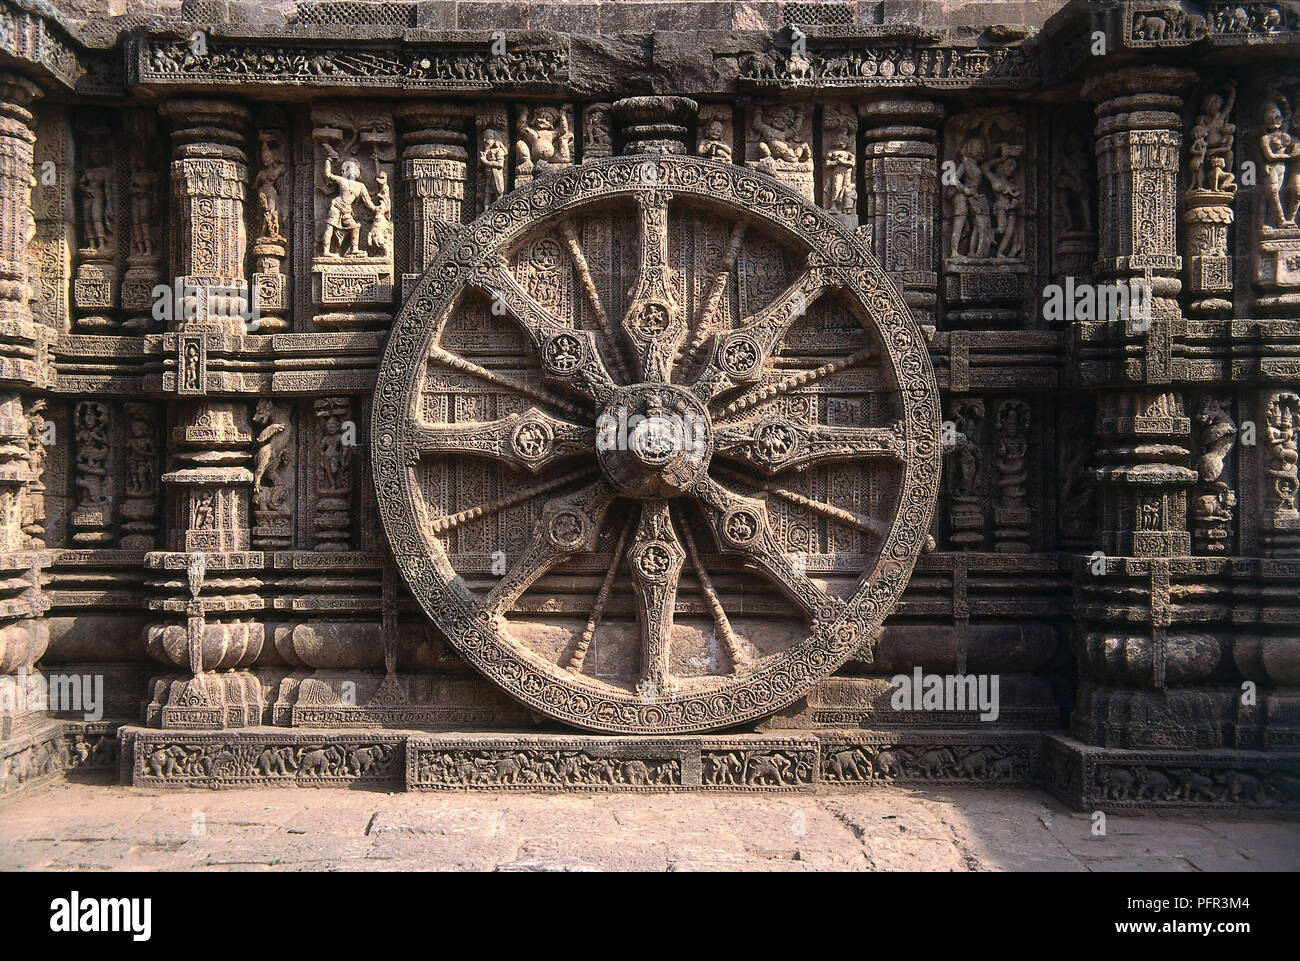 Indien, Konark Rad aus dem Sonnentempel von Konark, im 13. Jahrhundert erbaut und in der Form eines riesigen Wagen durch die Sonne Gott befohlen, gezogen von sieben Pferden, und durch die mächtigsten Ganga König gebaut, Narasingha Deb-I, 1238-1264 A.D. Stockfoto